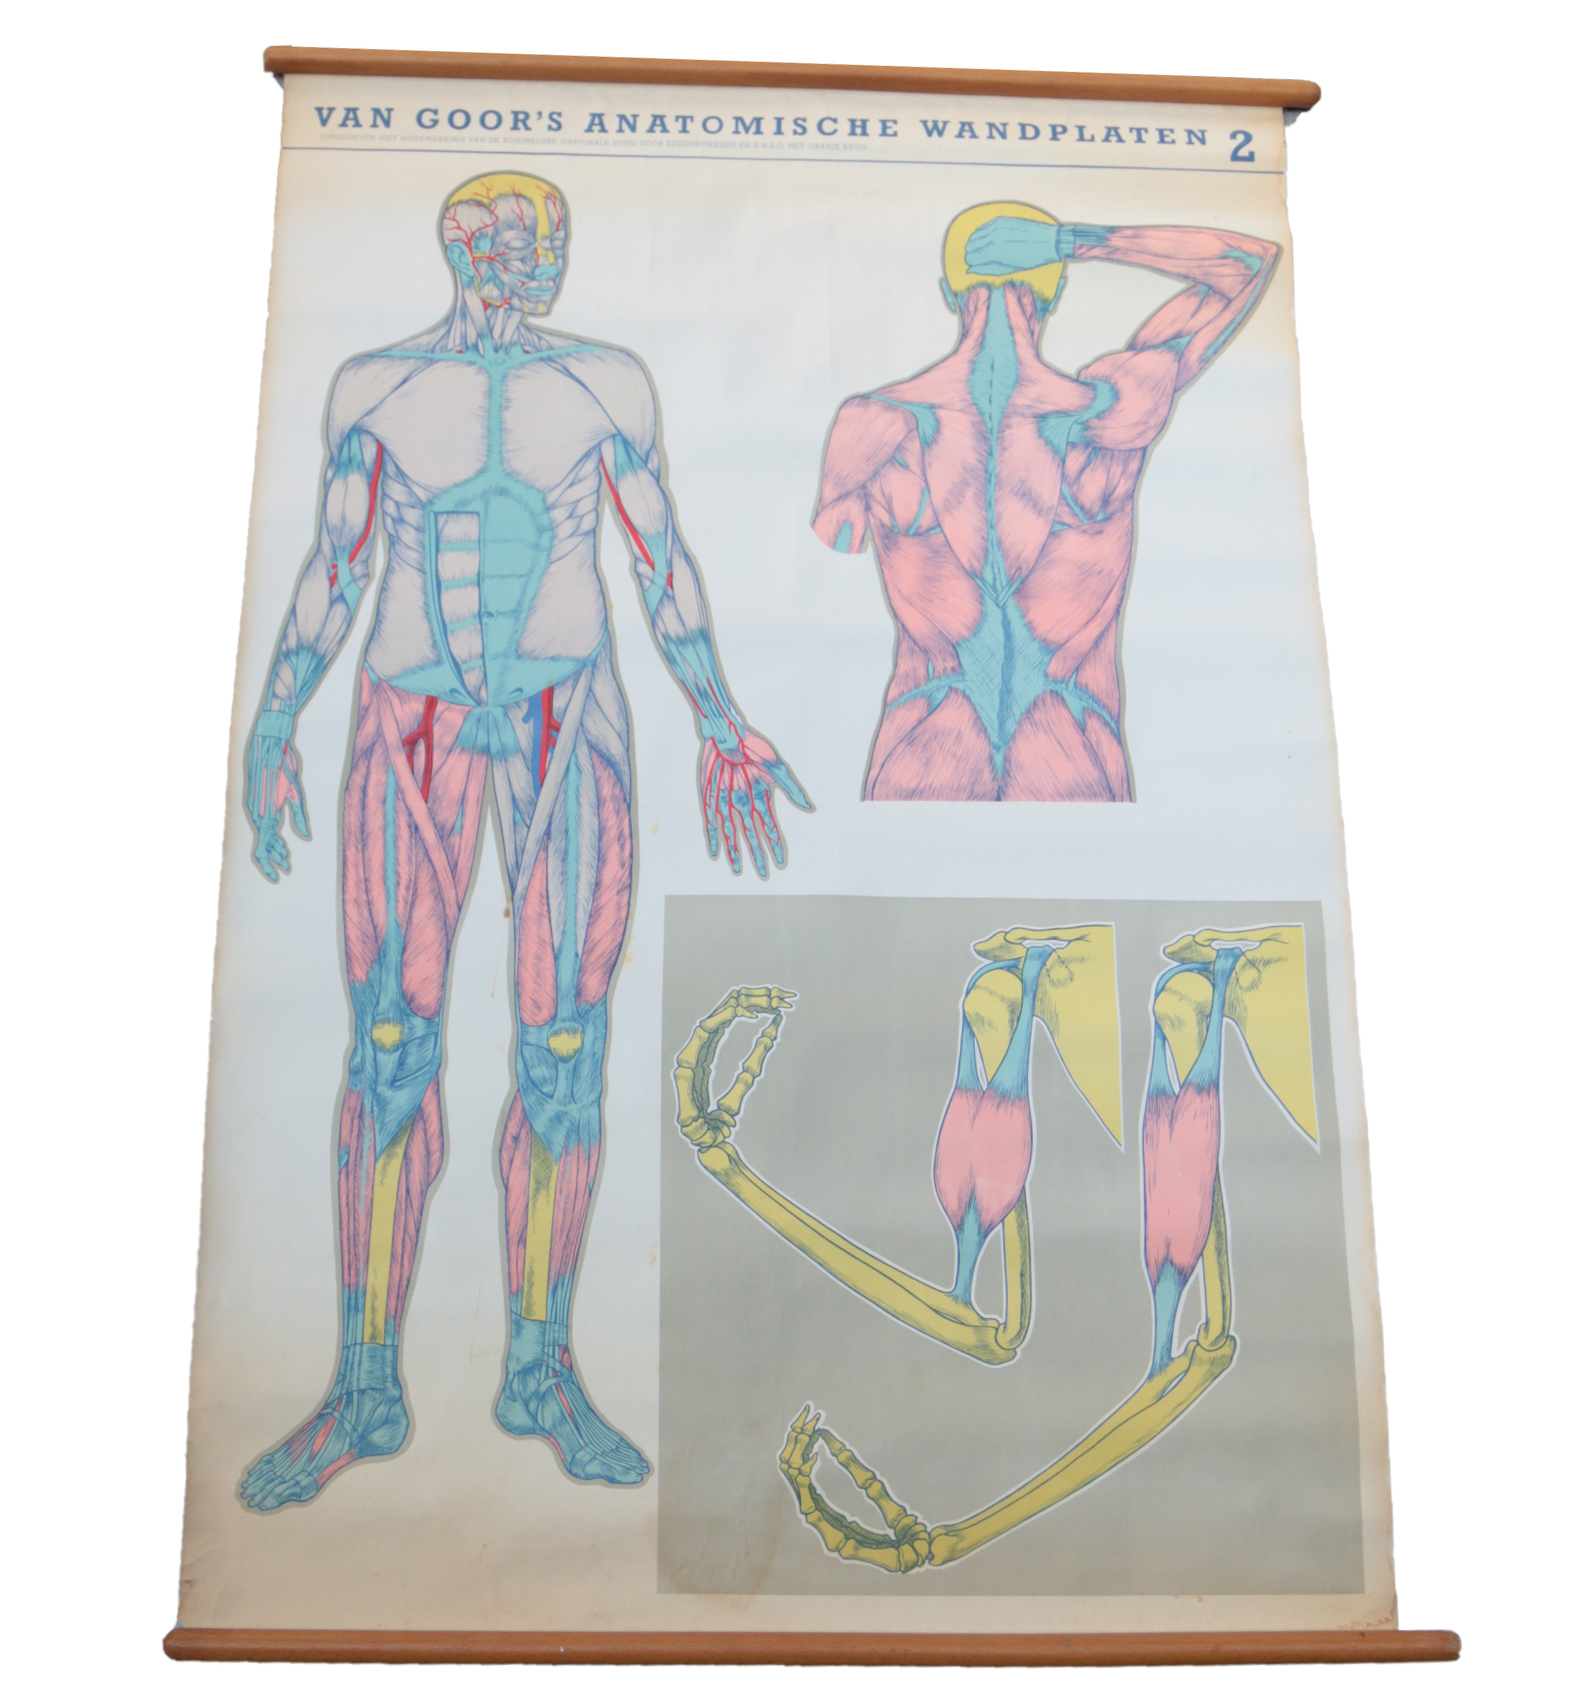 Kapel toxiciteit Voorstellen Vintage Schoolplaat van Goor's Anatomische wandplaten 2 – Dehuiszwaluw